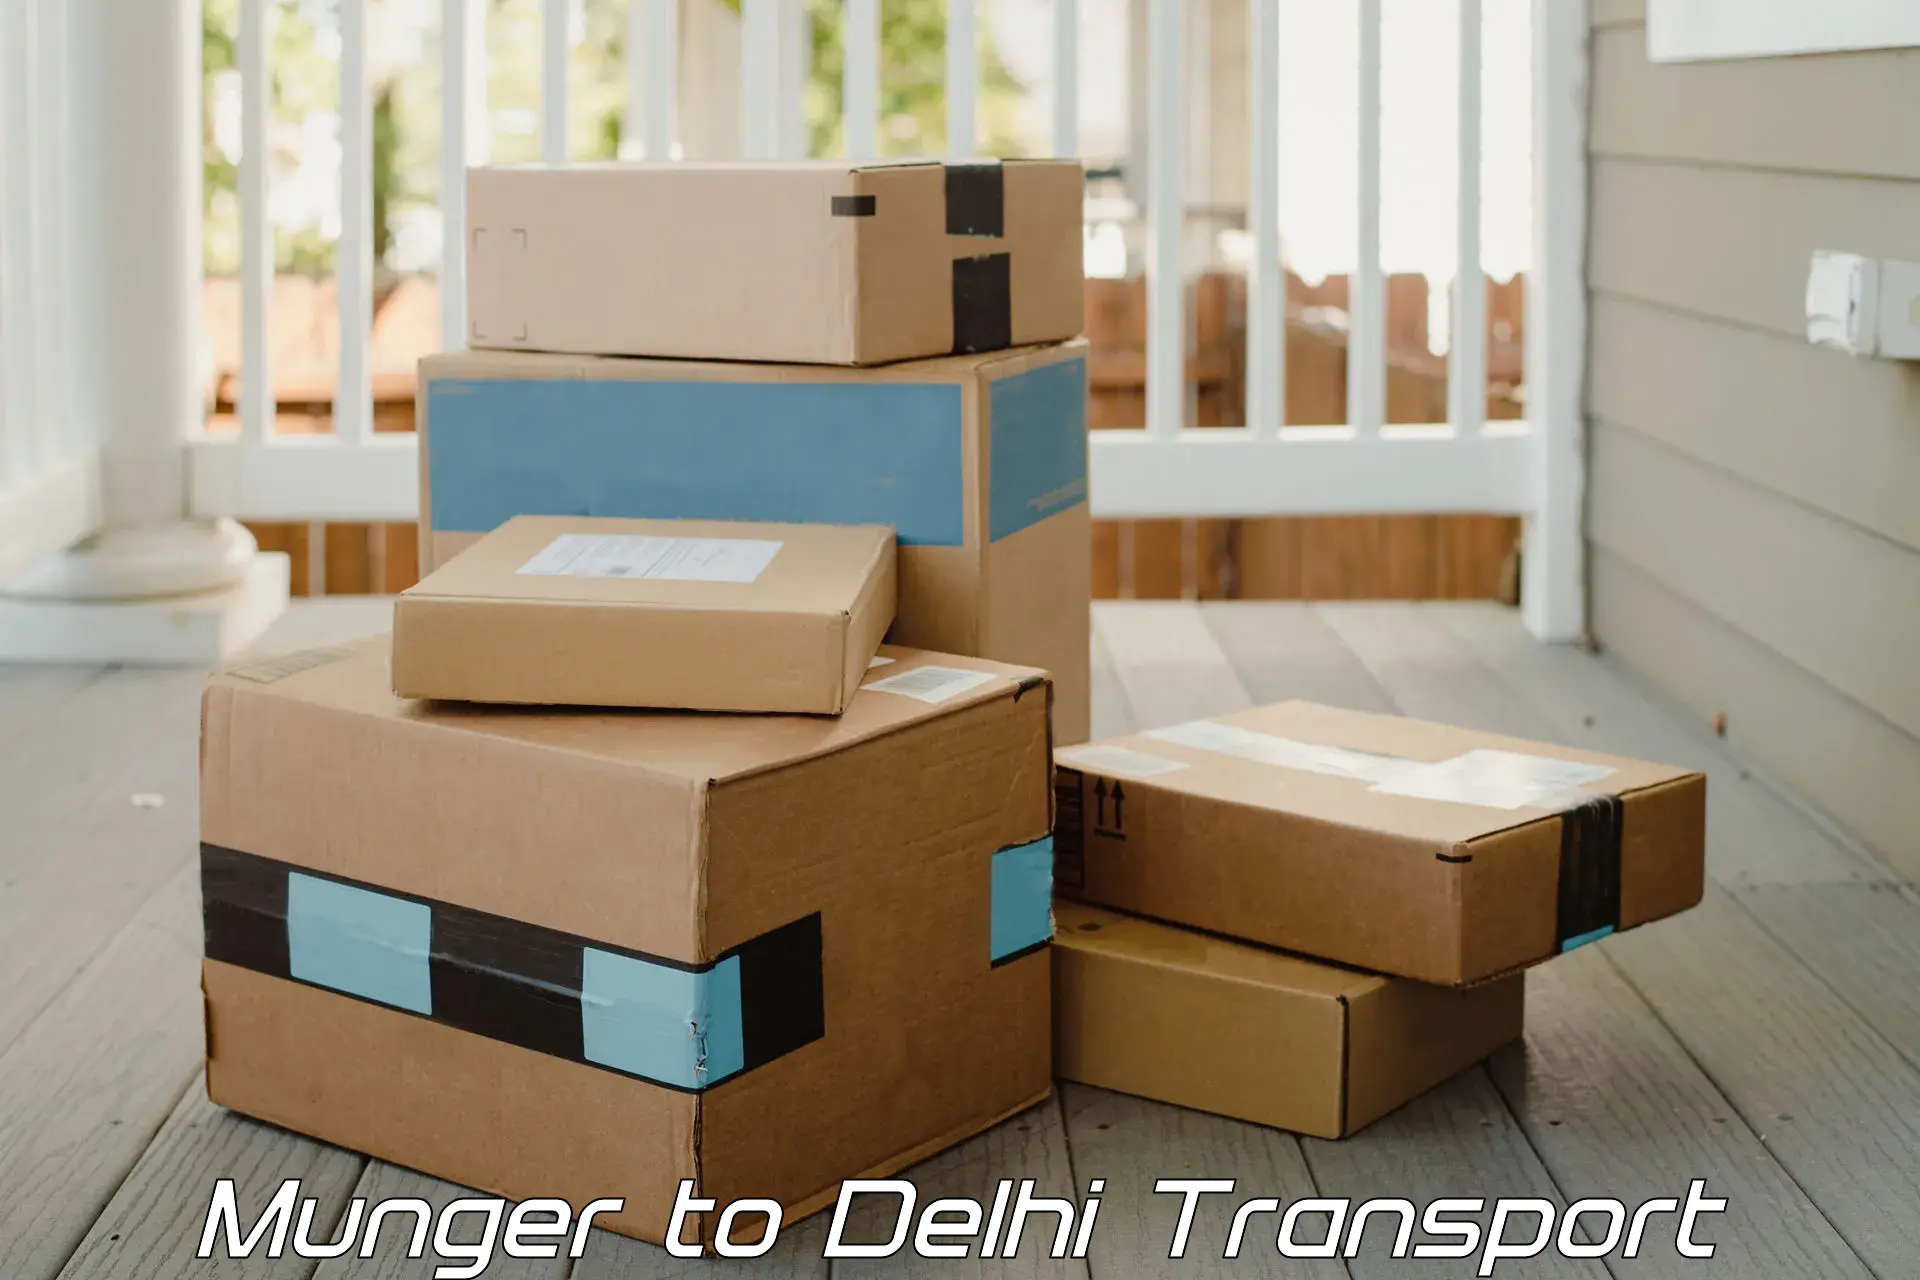 Interstate transport services Munger to Delhi Technological University DTU